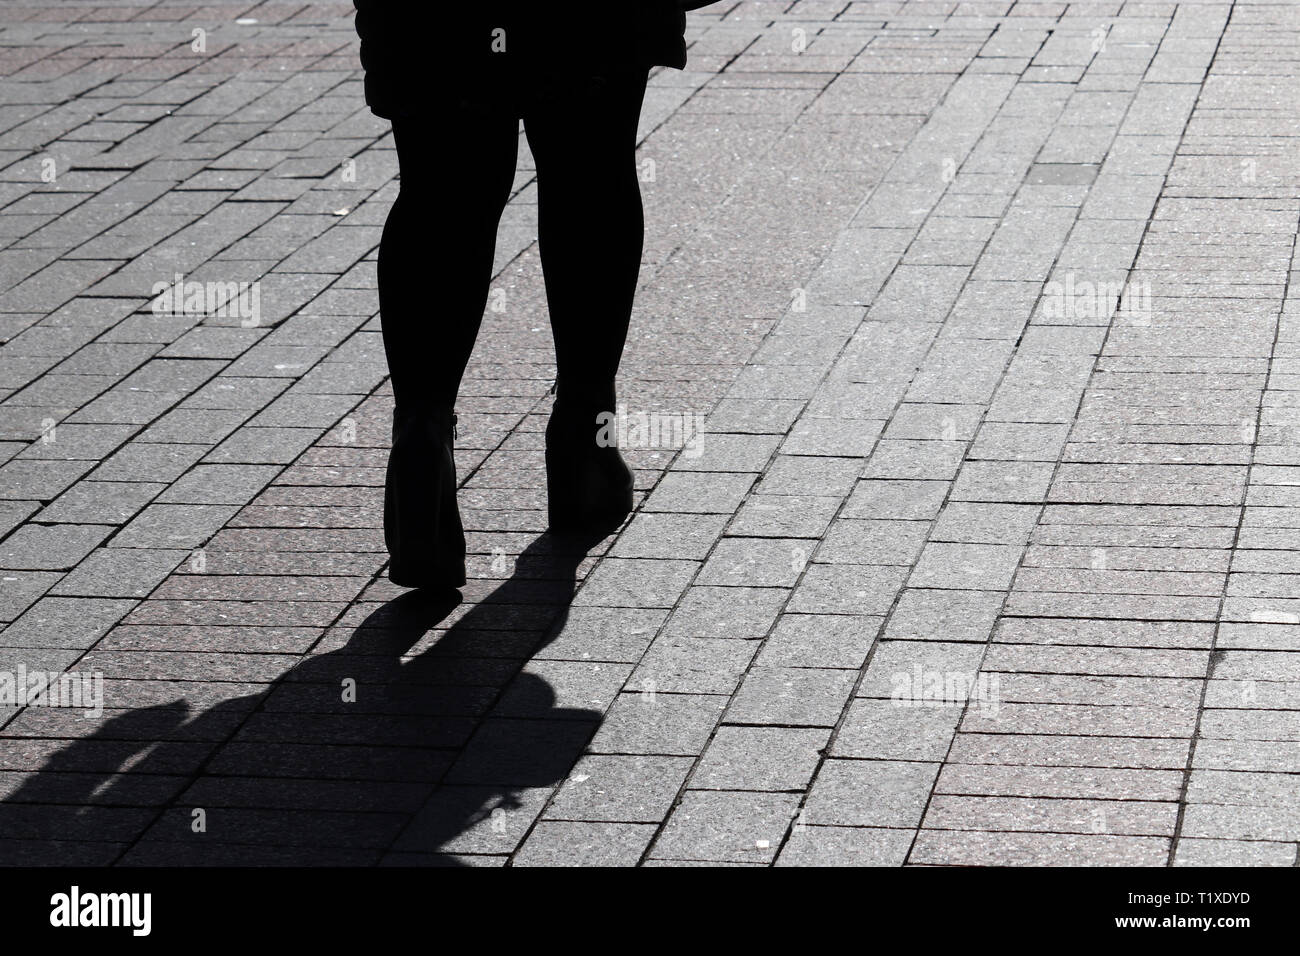 Silhouette de femme seule dans la rue, l'ombre noire sur la chaussée. Les jambes des femmes sur le trottoir, concept de la solitude, la séparation, l'alimentation Banque D'Images